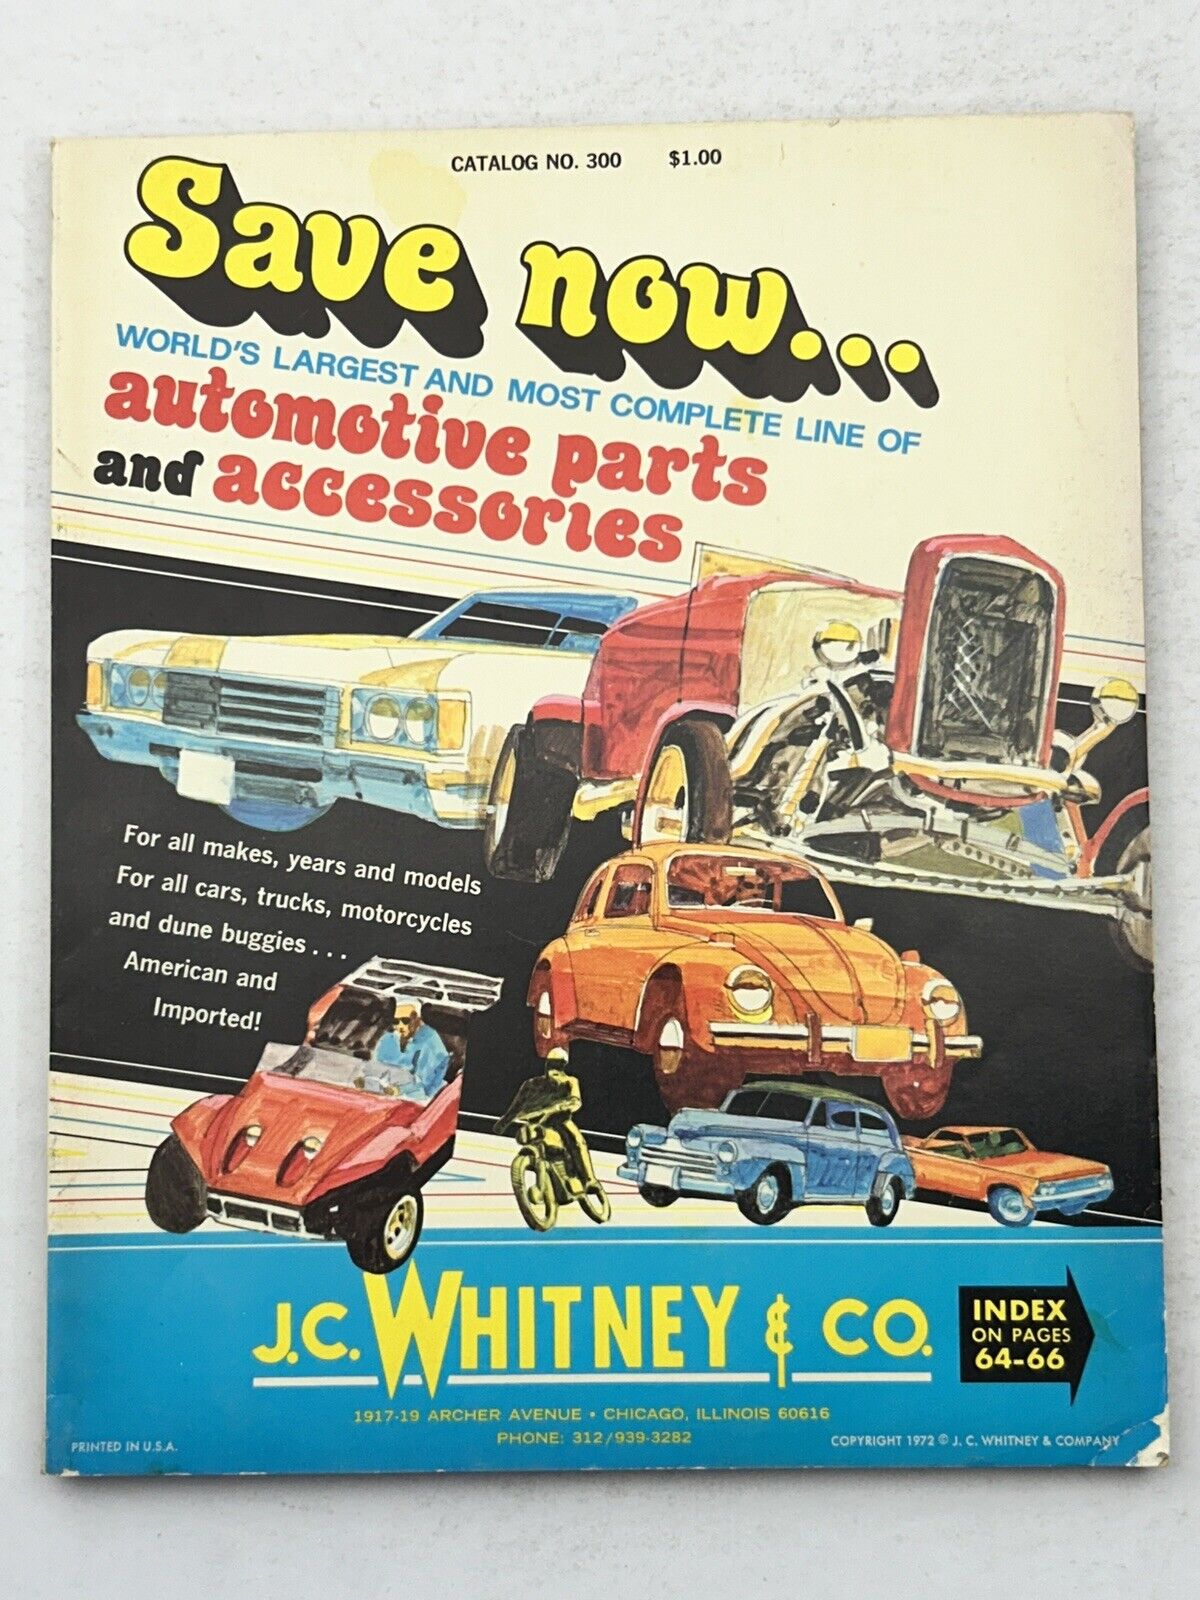 Vintage 1972 J. C. Whitney Automotive Parts & Accessories Catalog #300 - Cars VW